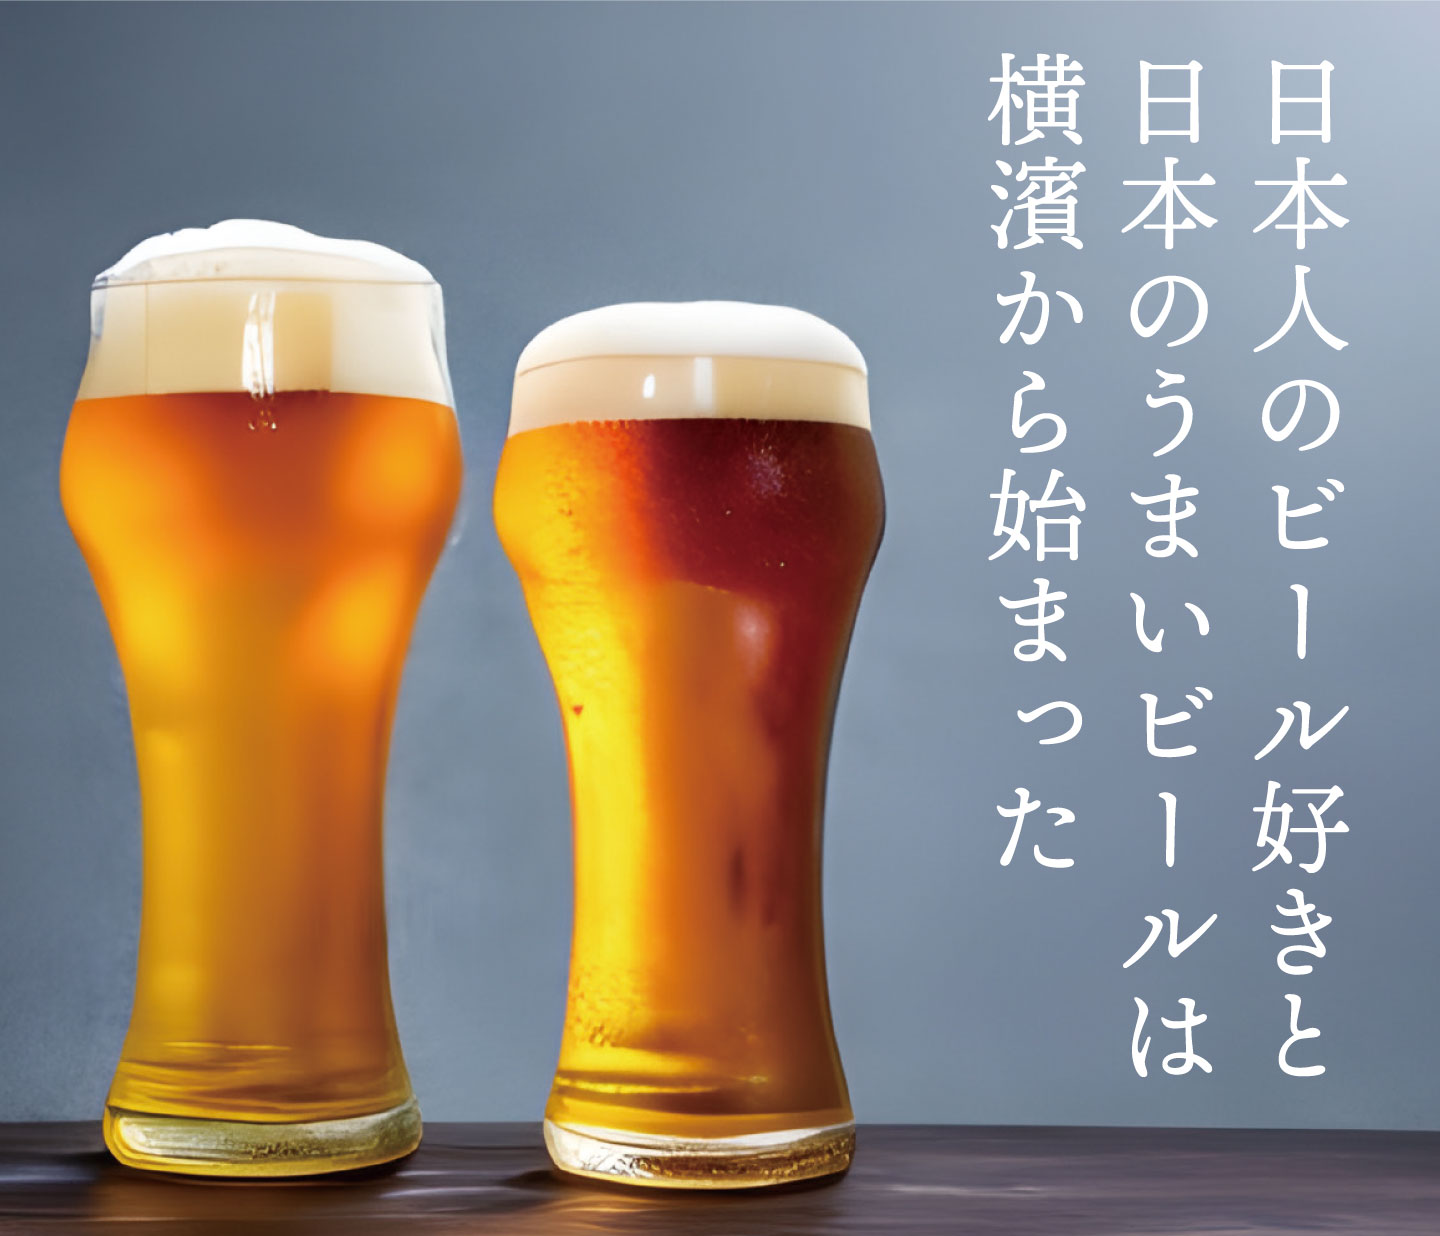 日本人のビール好きと、日本の「うまいビール」は、横浜から始まった